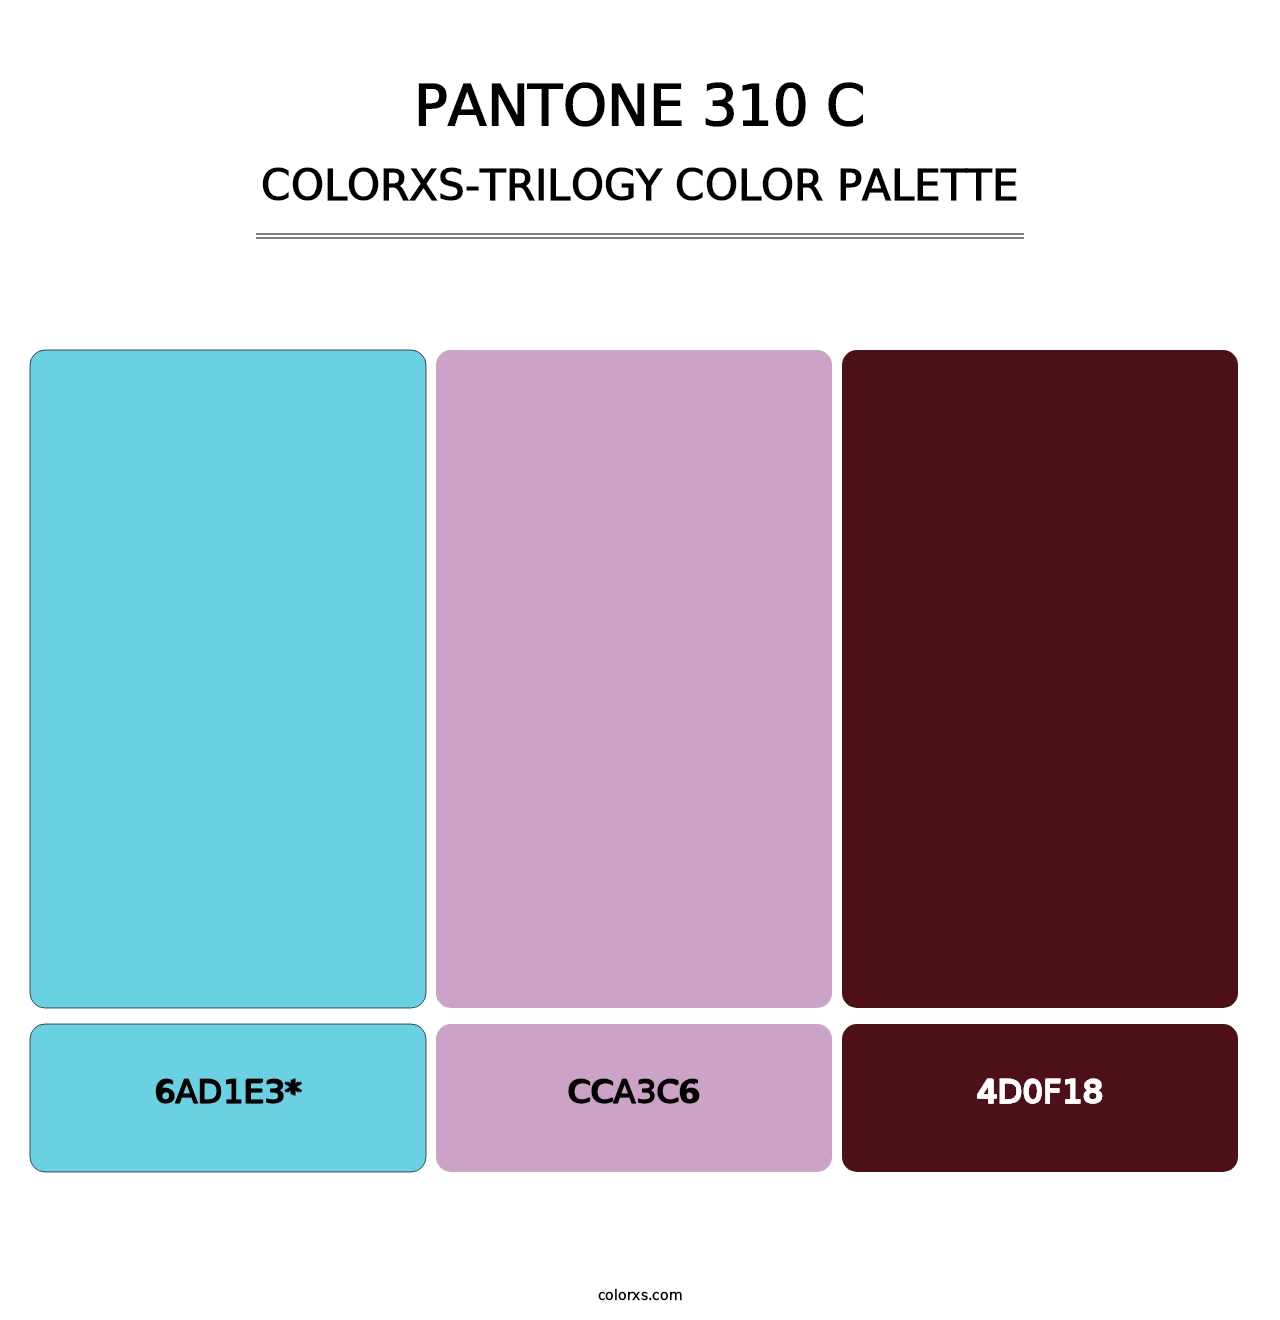 PANTONE 310 C - Colorxs Trilogy Palette